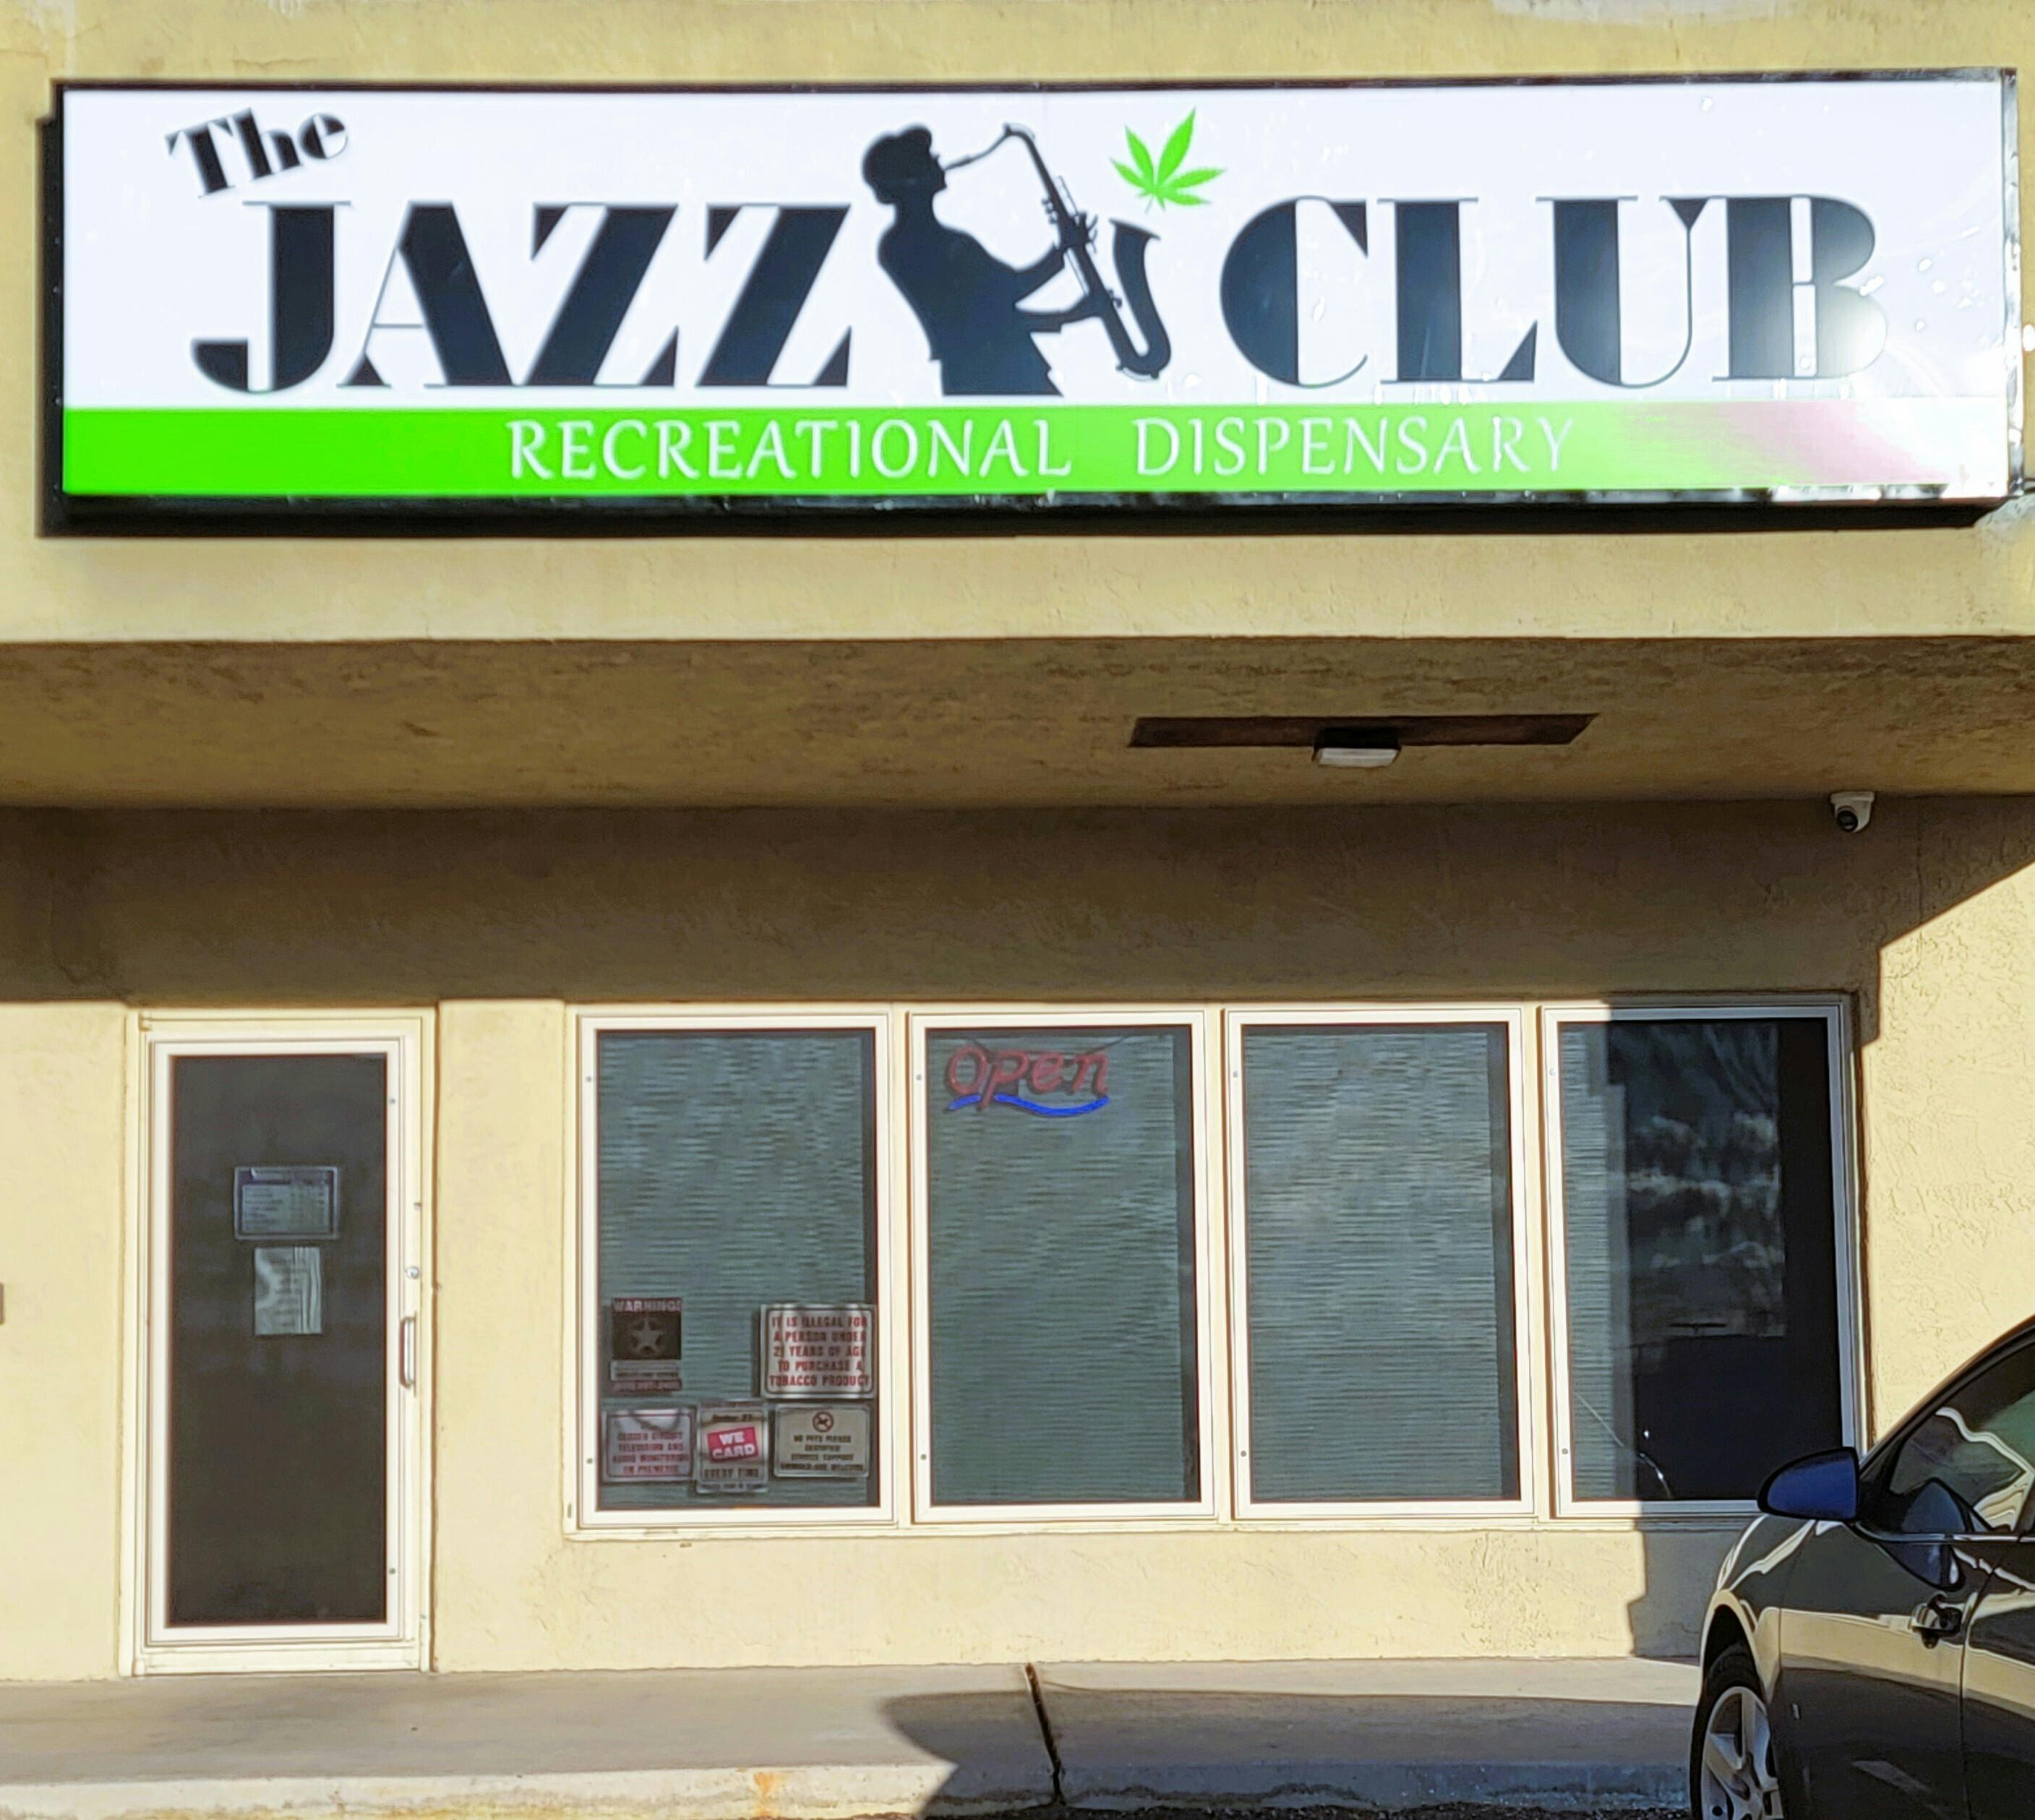 The Jazz Club logo